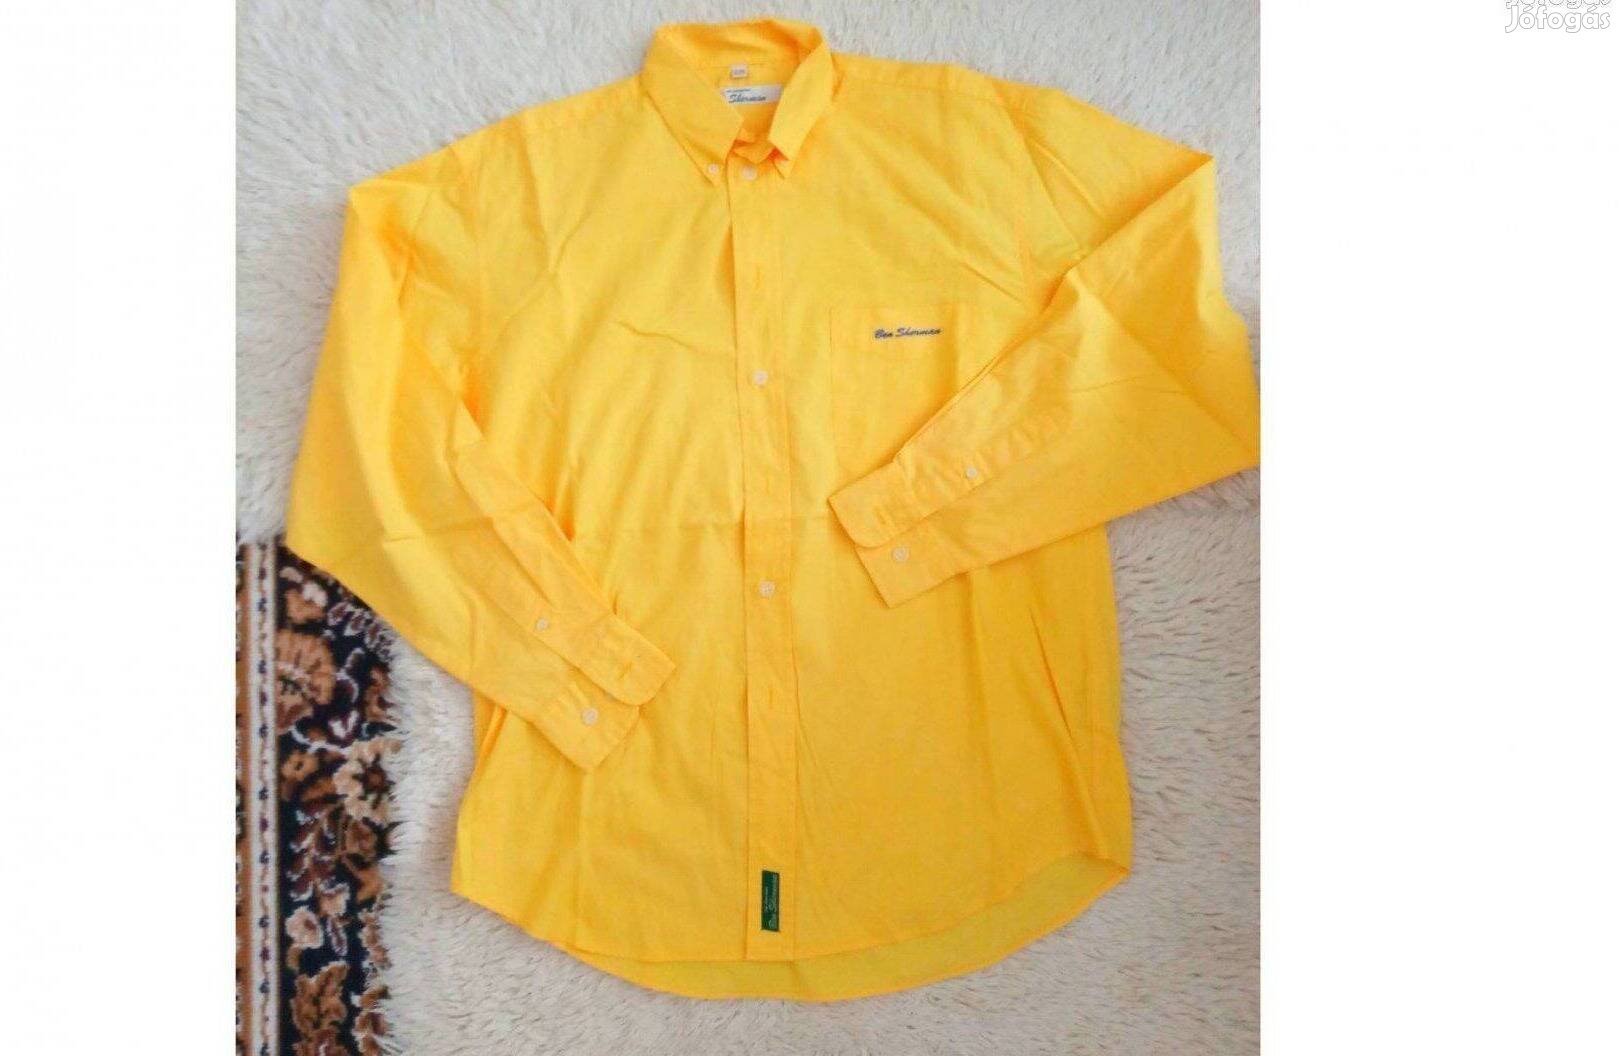 Ben Sherman márkás, élénk sárga színű férfi ing 2/M-es méretű